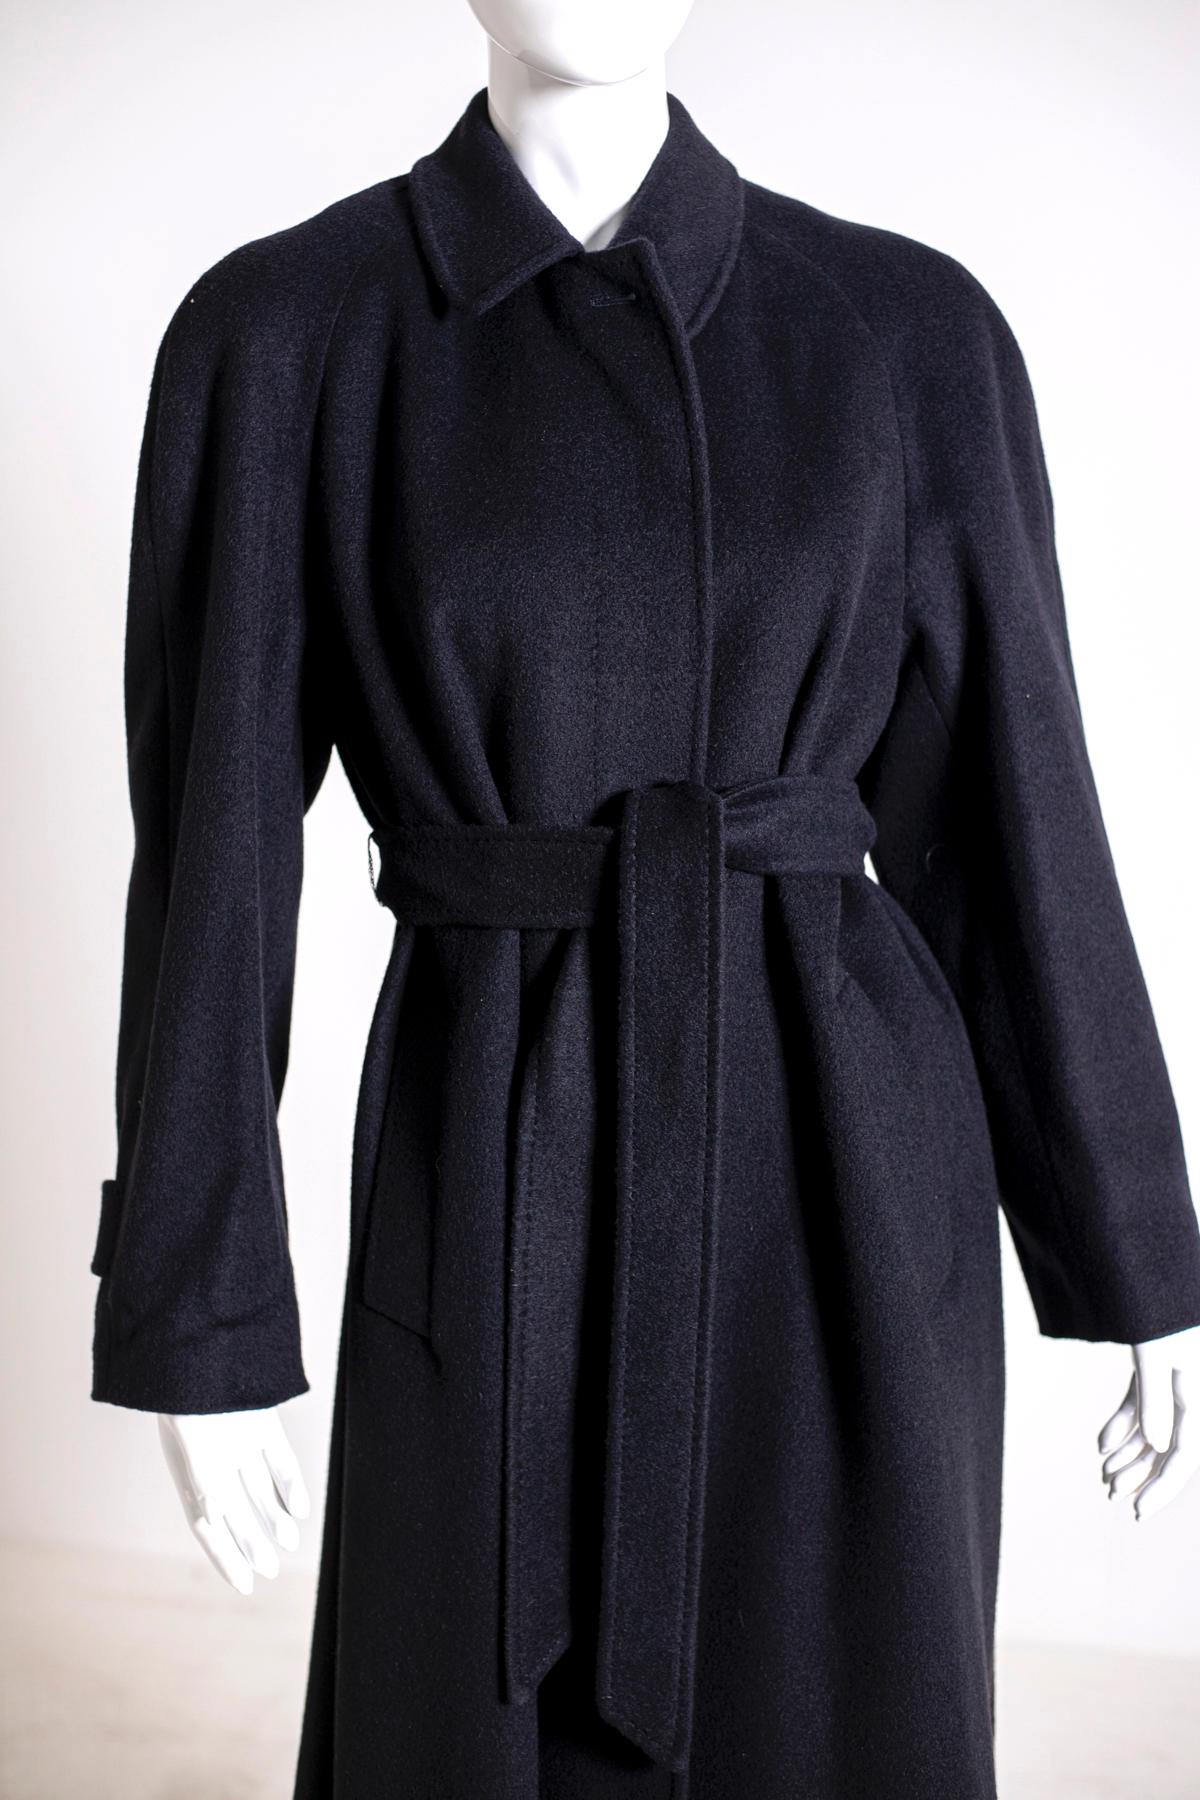 Magnifique manteau de femme Aquascutum des années 90, en 100% poil de chameau noir.
Sa ligne est classique, avec cinq boutons sur le devant et deux poches latérales confortables, longueur cheville. L'intérieur est doublé en 100% viscose et